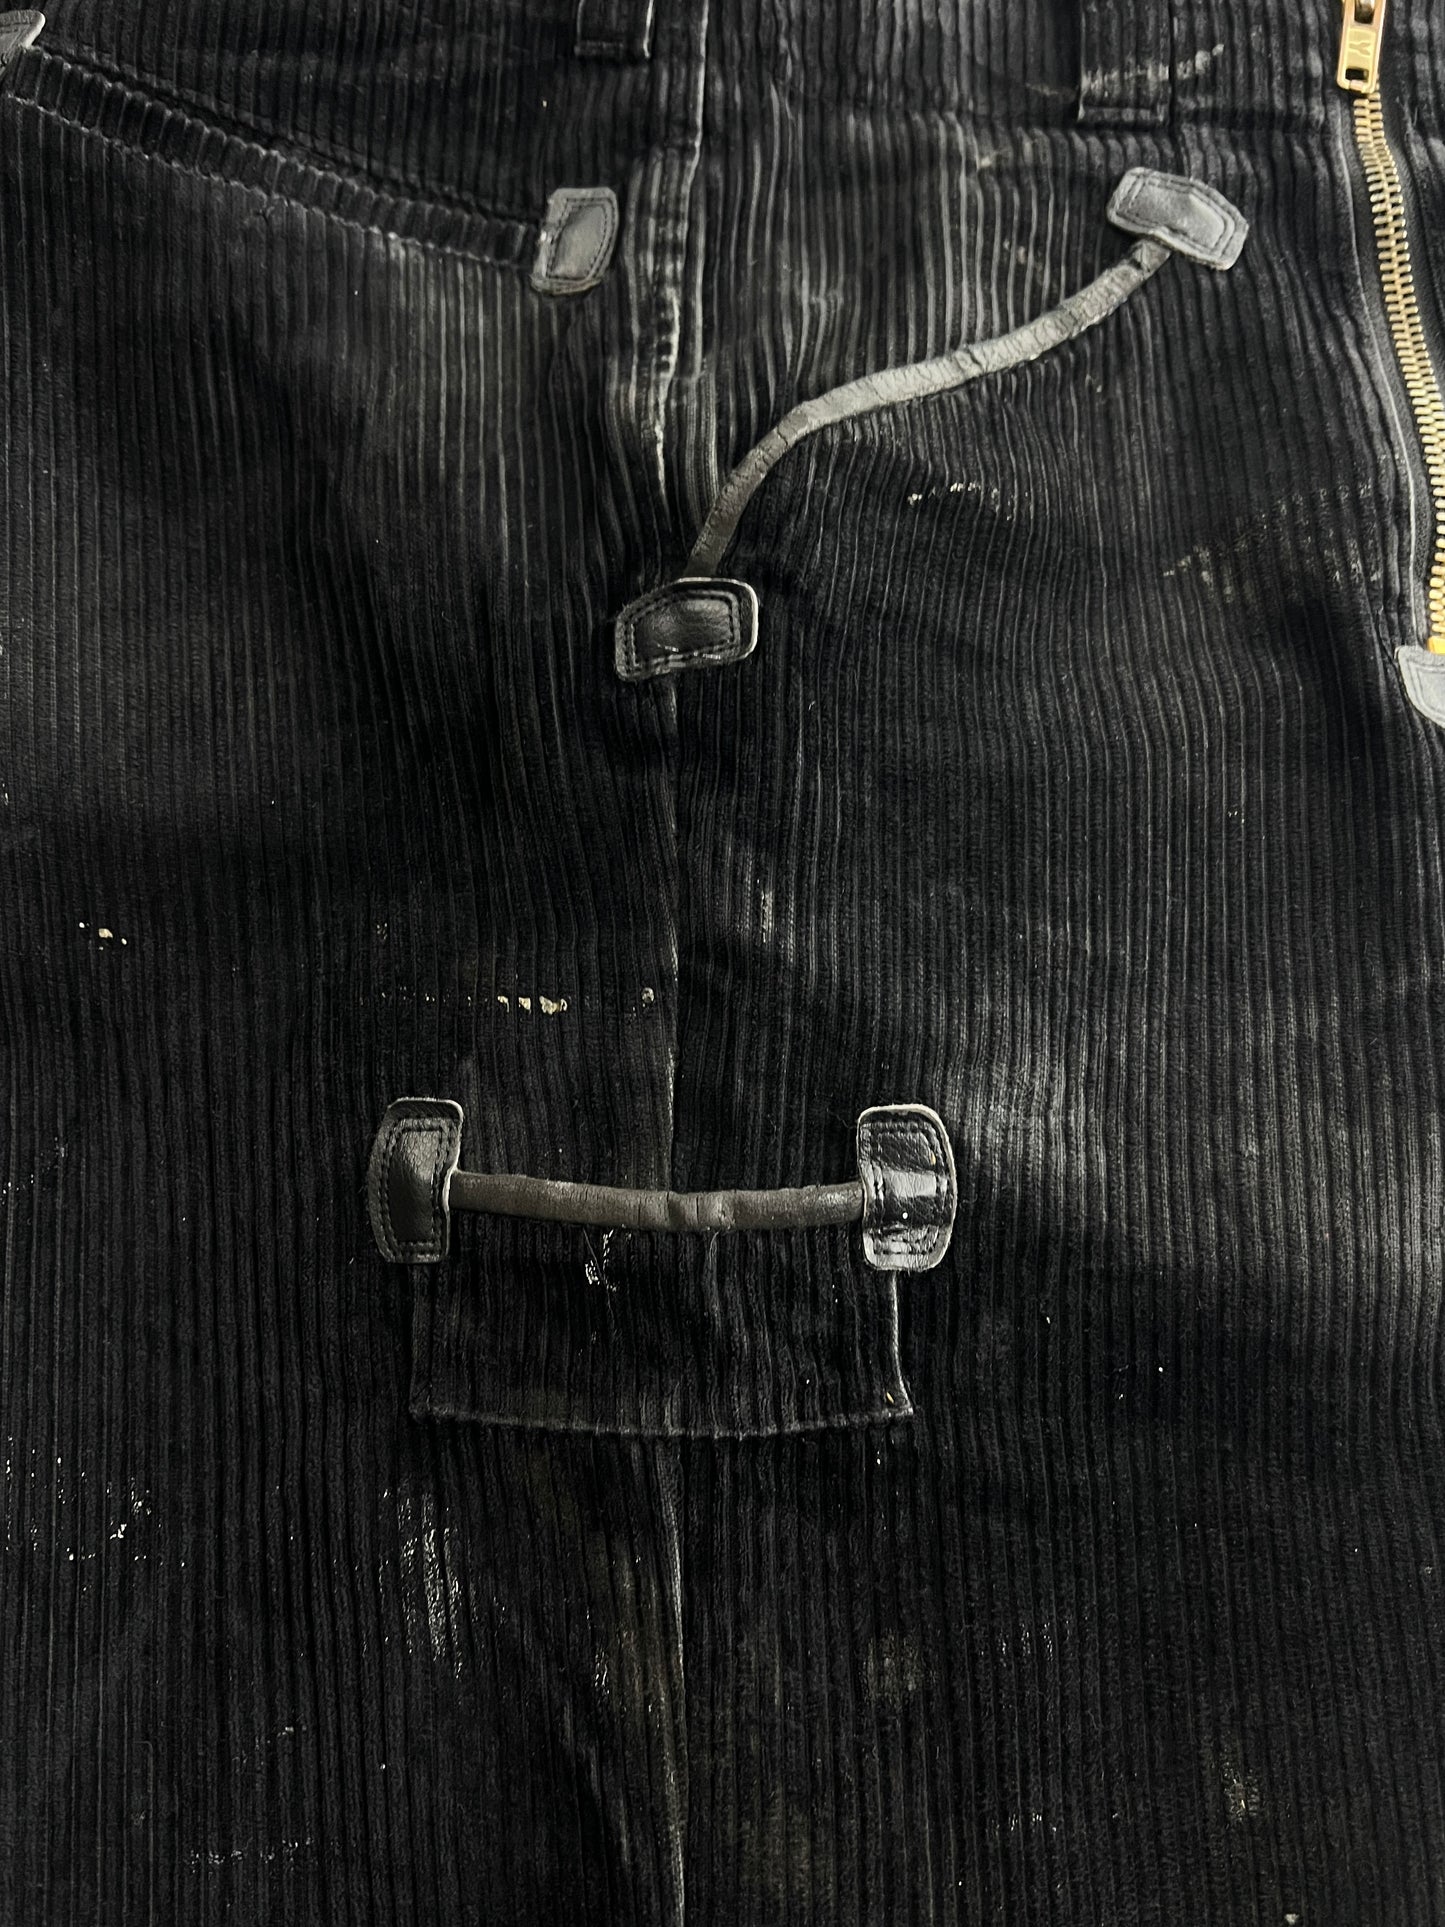 German Carpenter Pants [34"]